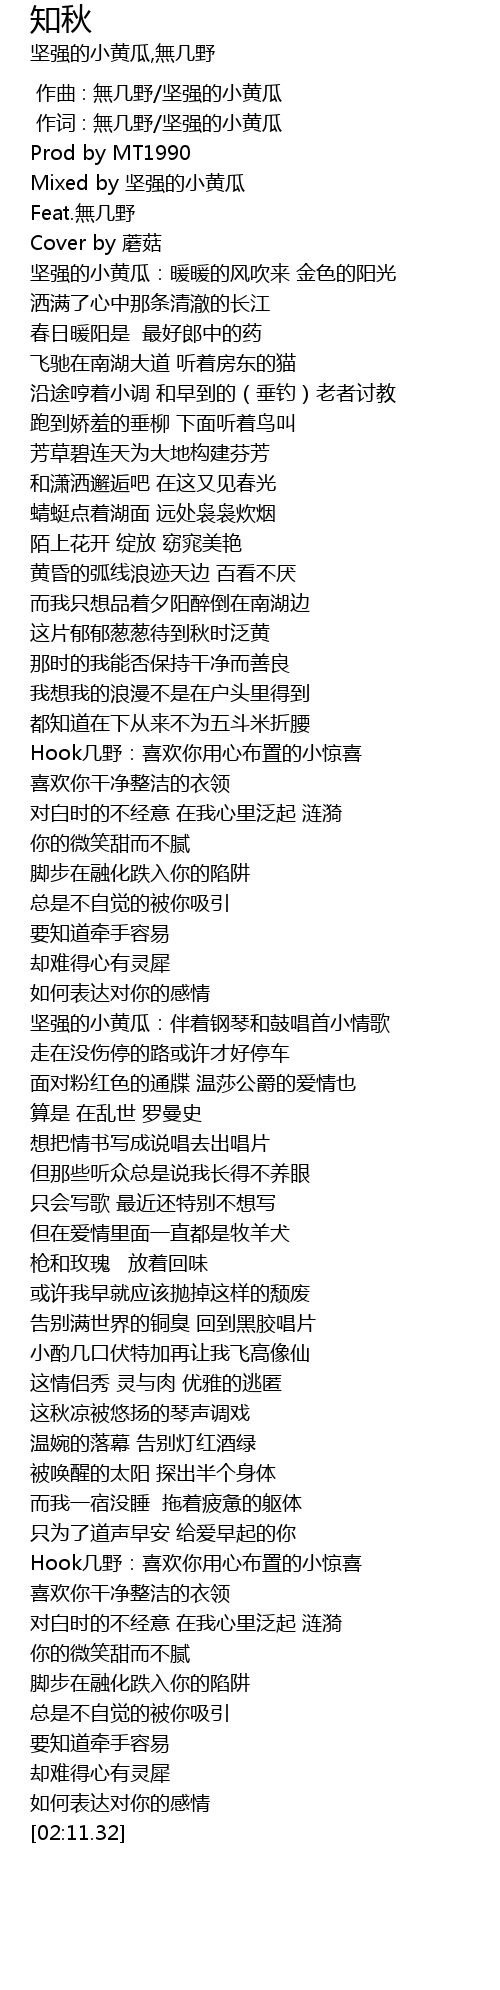 知秋 zhi qiu Lyrics